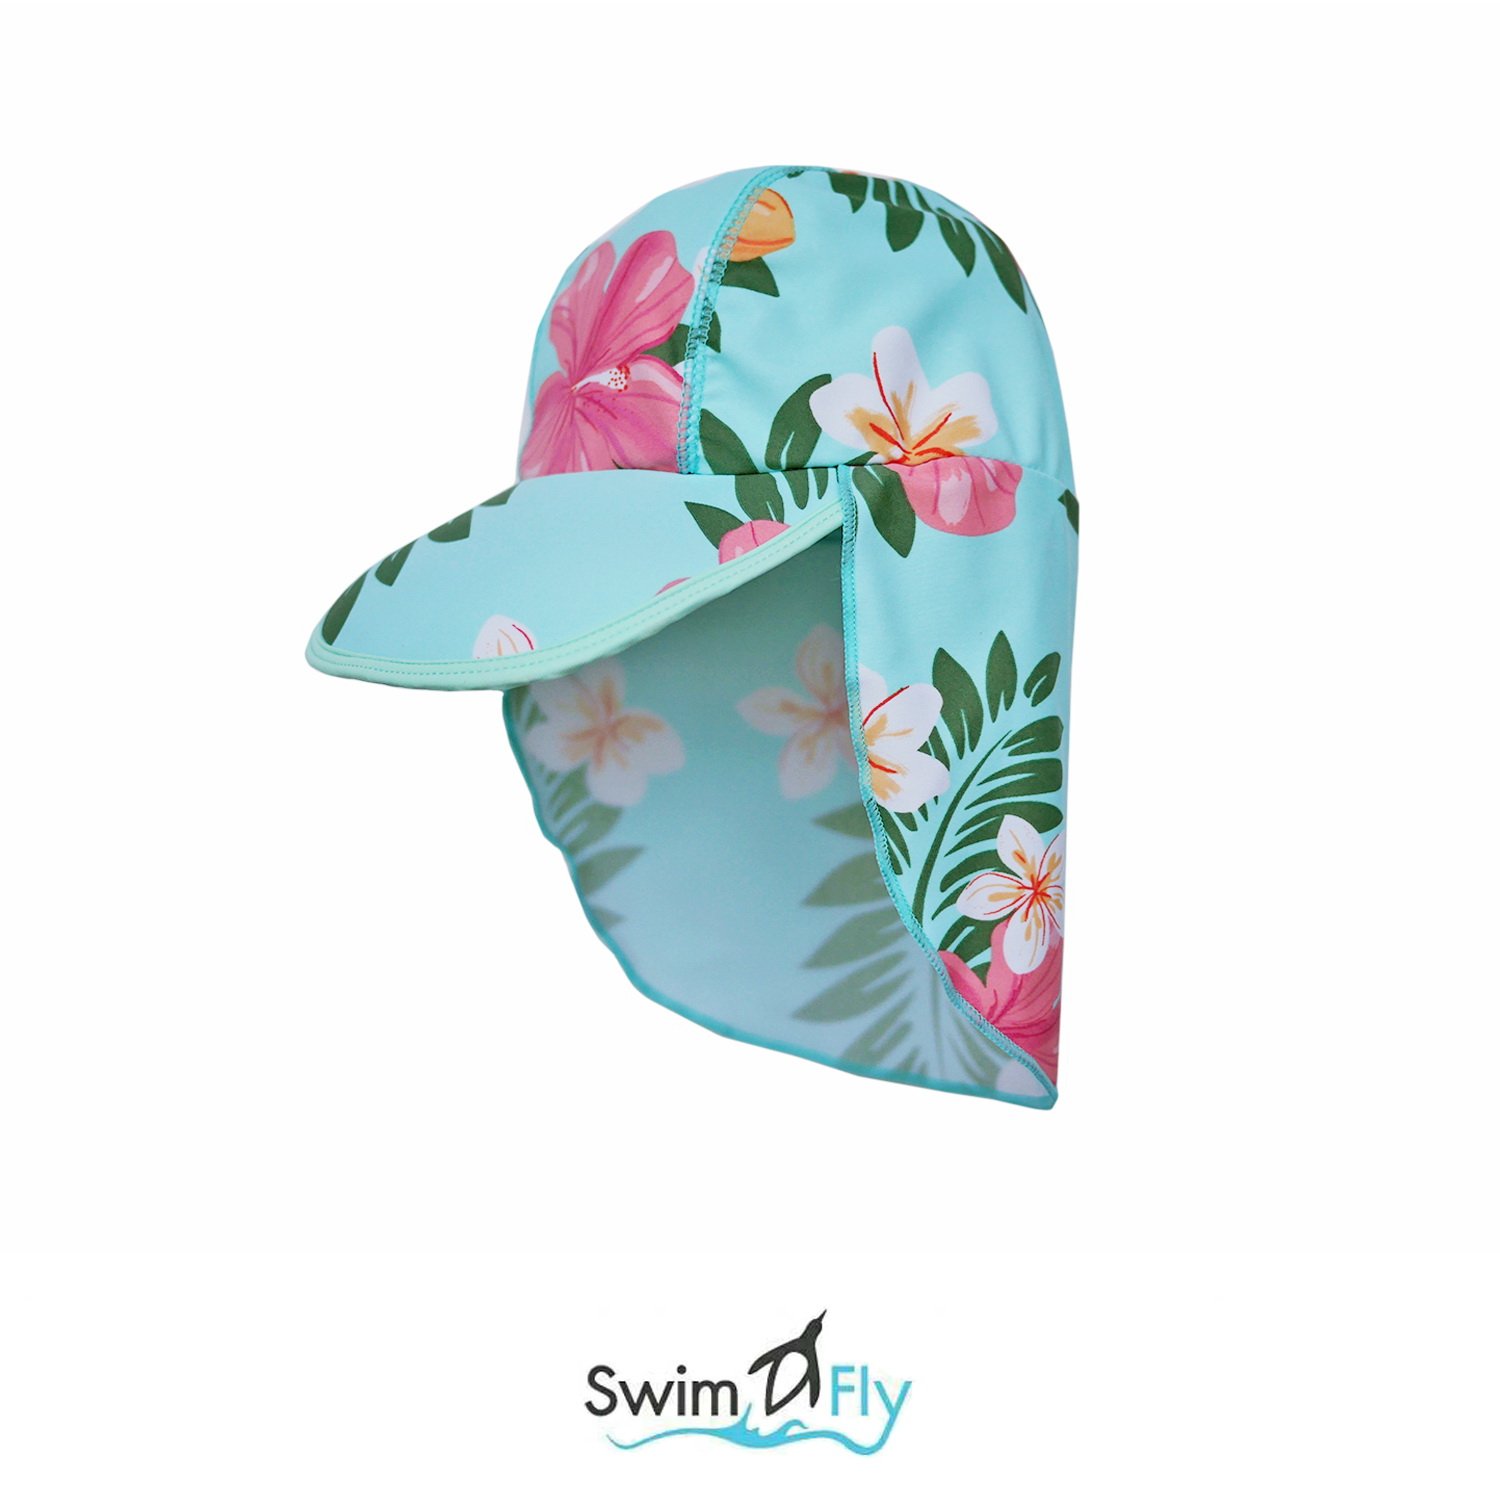 หมวกว่ายน้ำแบบบังแดดบริเวณหน้าและคอ ลายดอกไม้